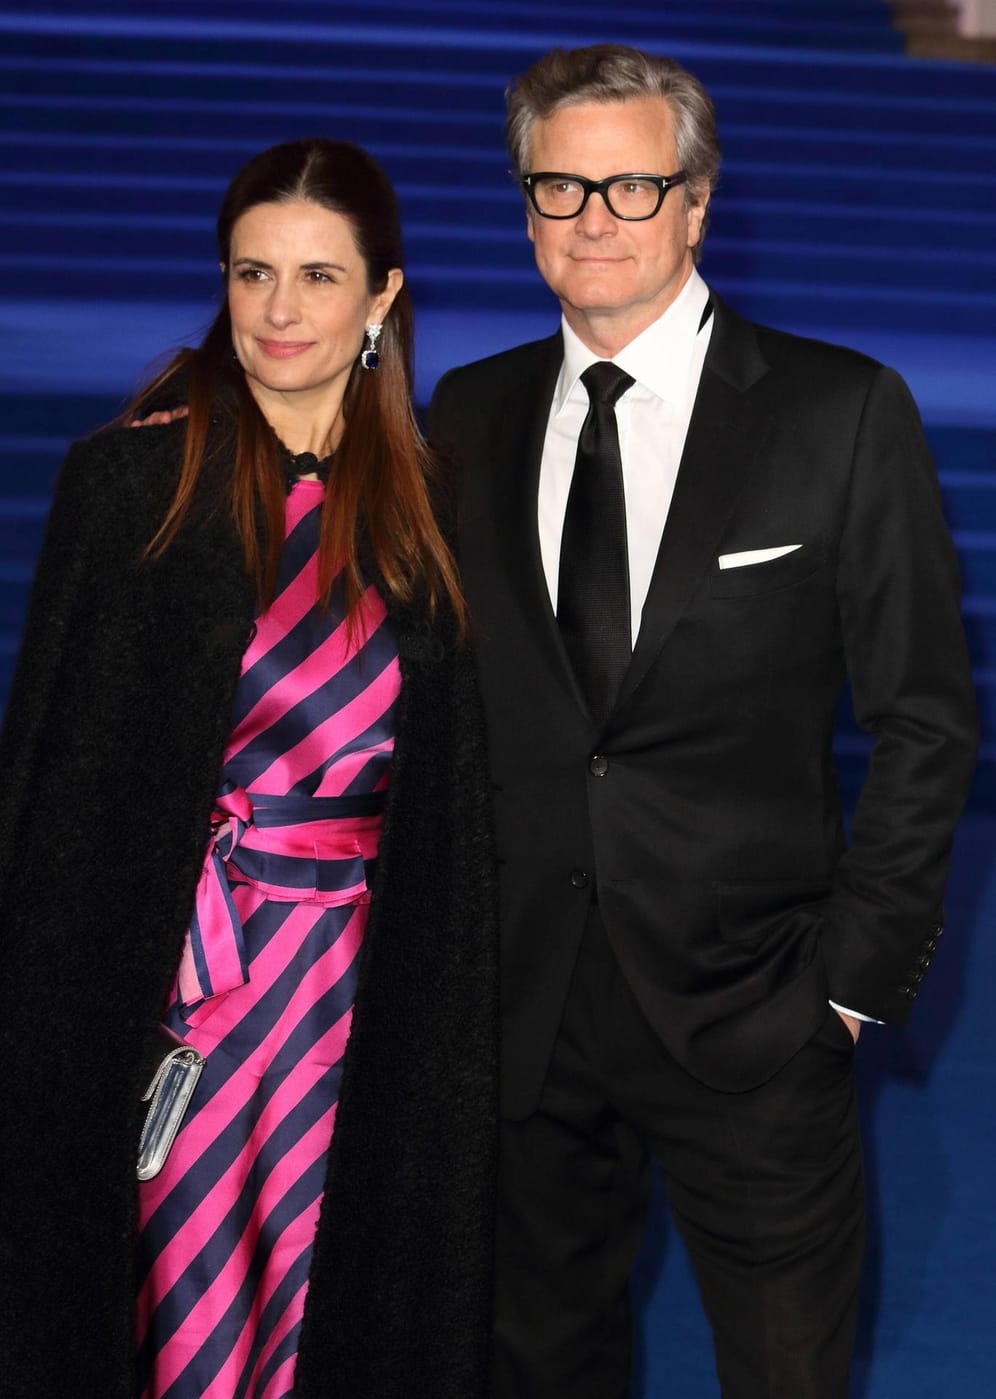 Colin Firth und Livia Guggioli: Seit mehr als 22 Jahren waren die beiden verheiratet, doch nun hat das Paar sich getrennt. Sie wollen aber enge Freunde bleiben.